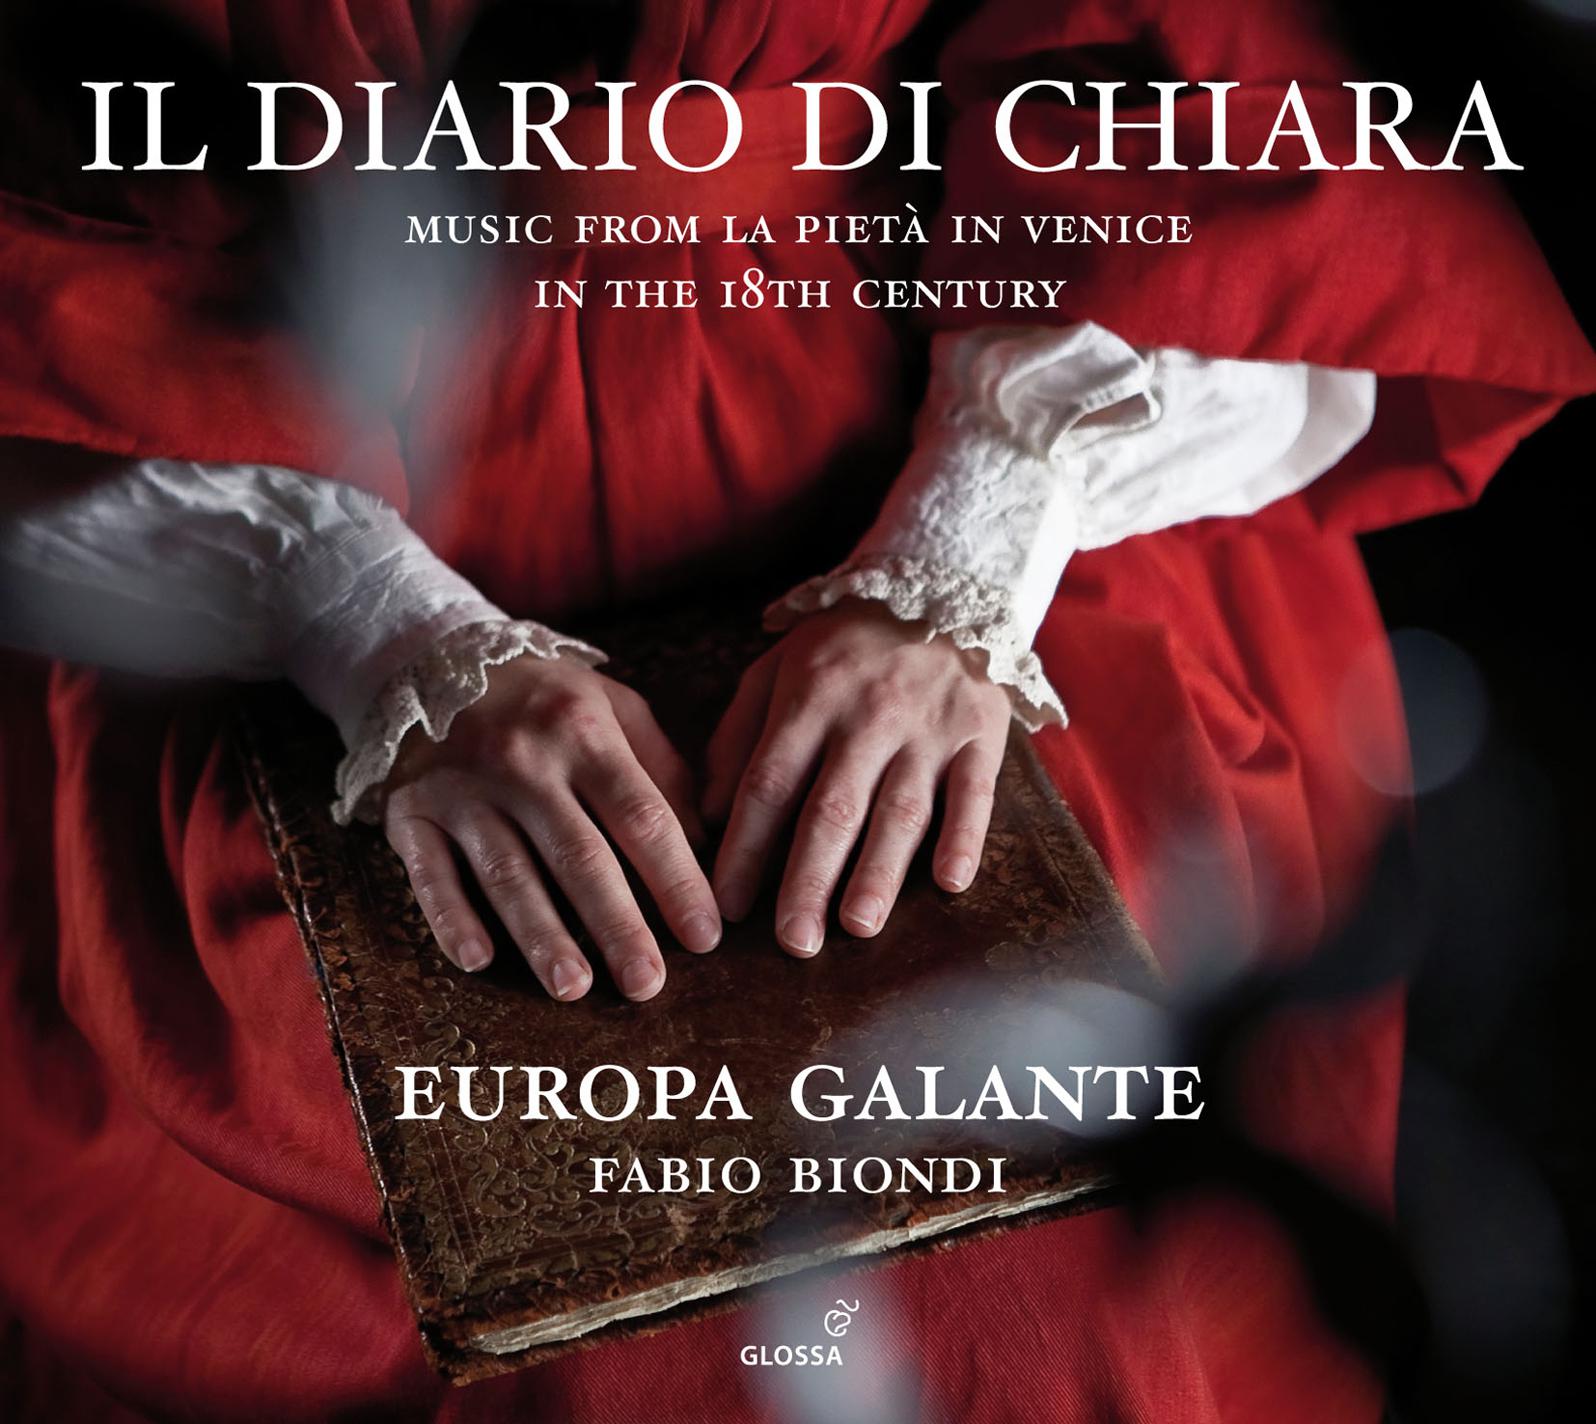 Concerto for Viola d'amore and Strings in D Major, "Per la S.ra Chiaretta": III. Allegro